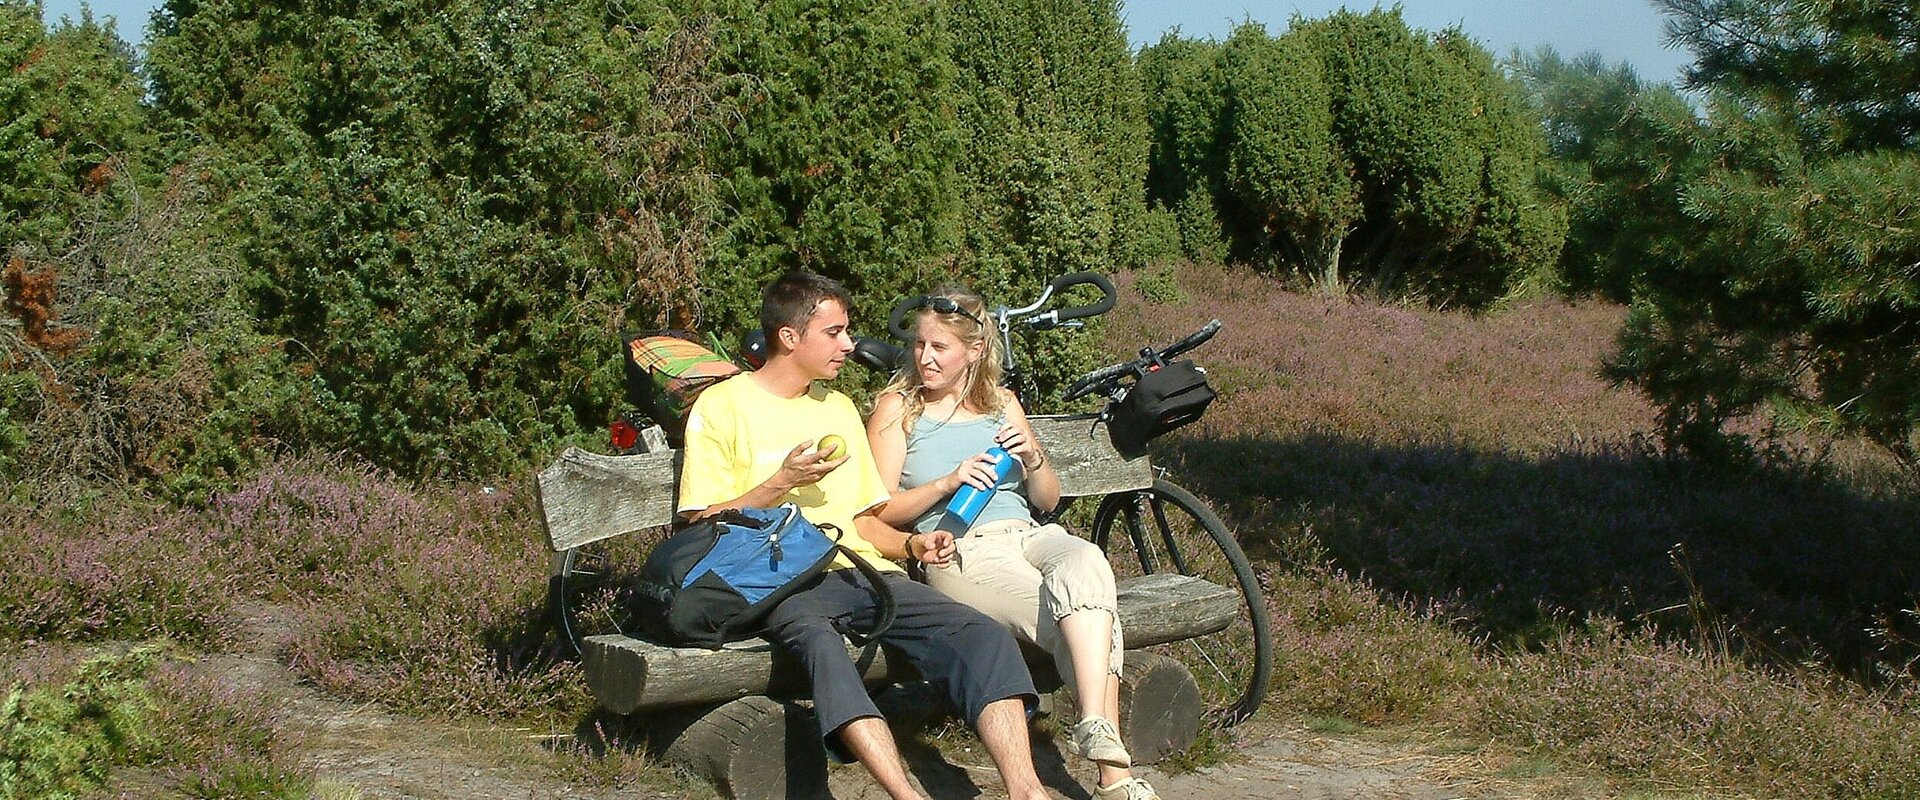 Ein junges Paar rastet auf seiner Fahrradtour auf einer Bank in der blühenden Ellerndorfer Wacholderheide.